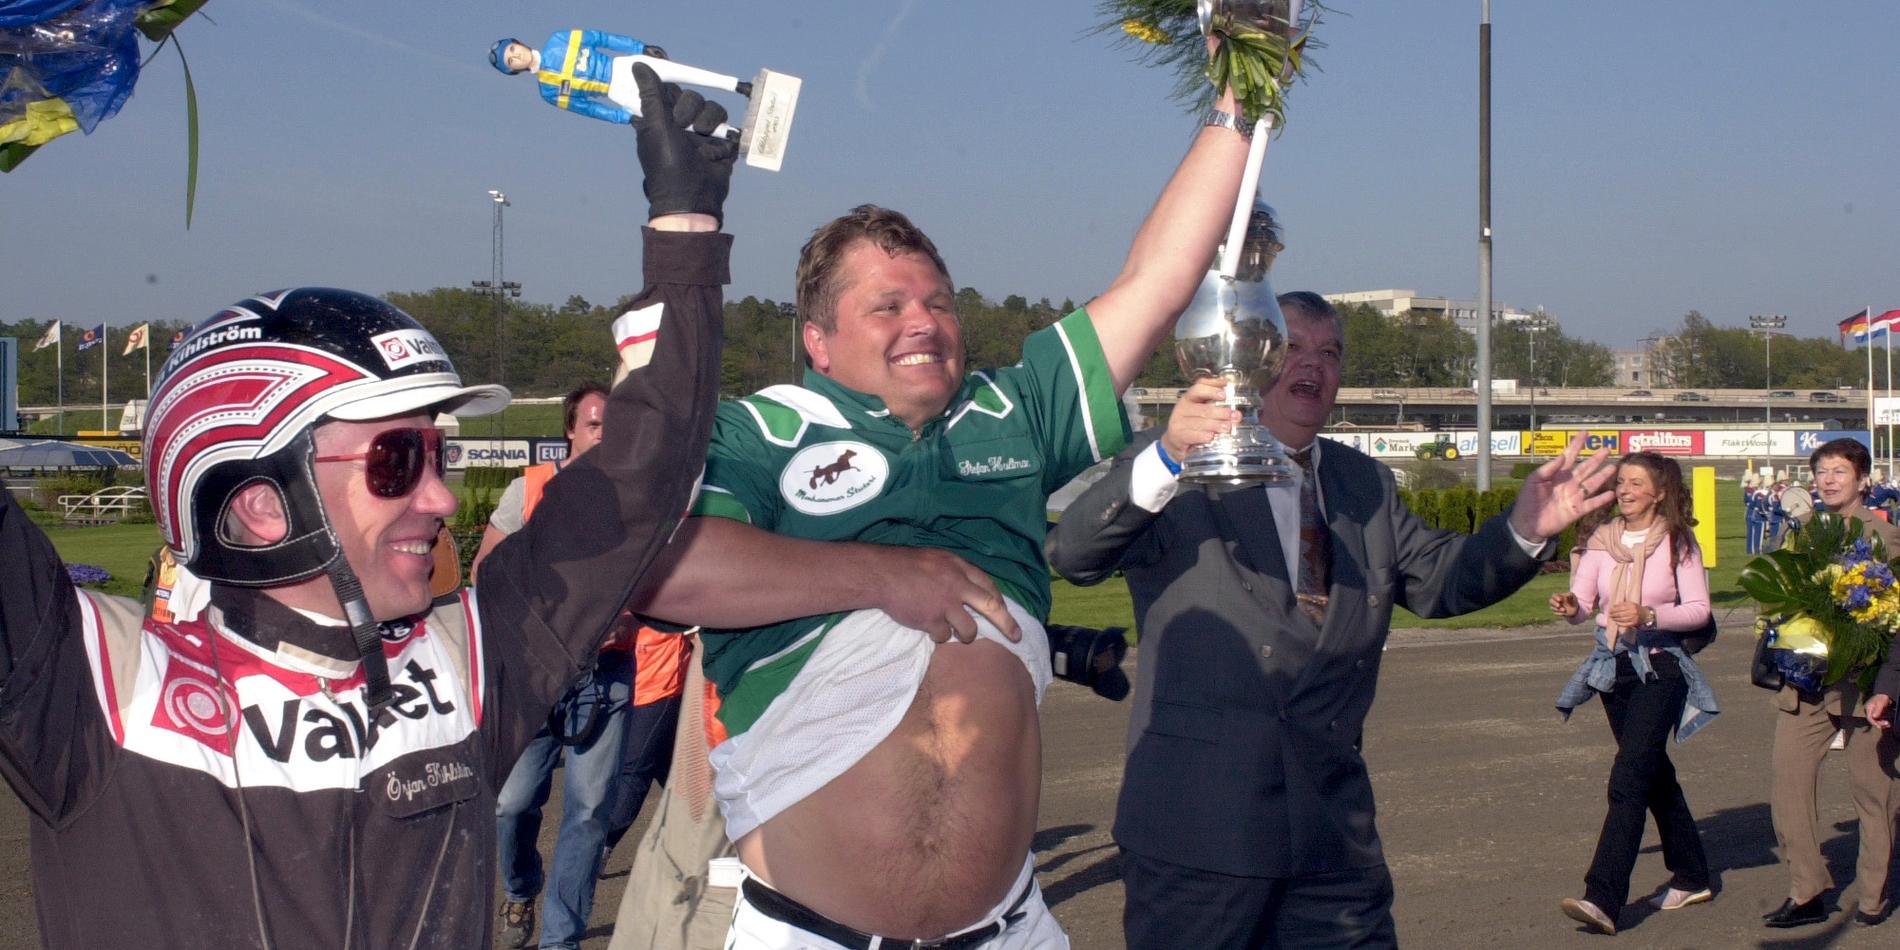 Örjan Kihlströms starkaste Elitloppsminne som kusk var 2003 när han vann storloppet för allra första gången. Då med Stefan Hultmans From Above. 